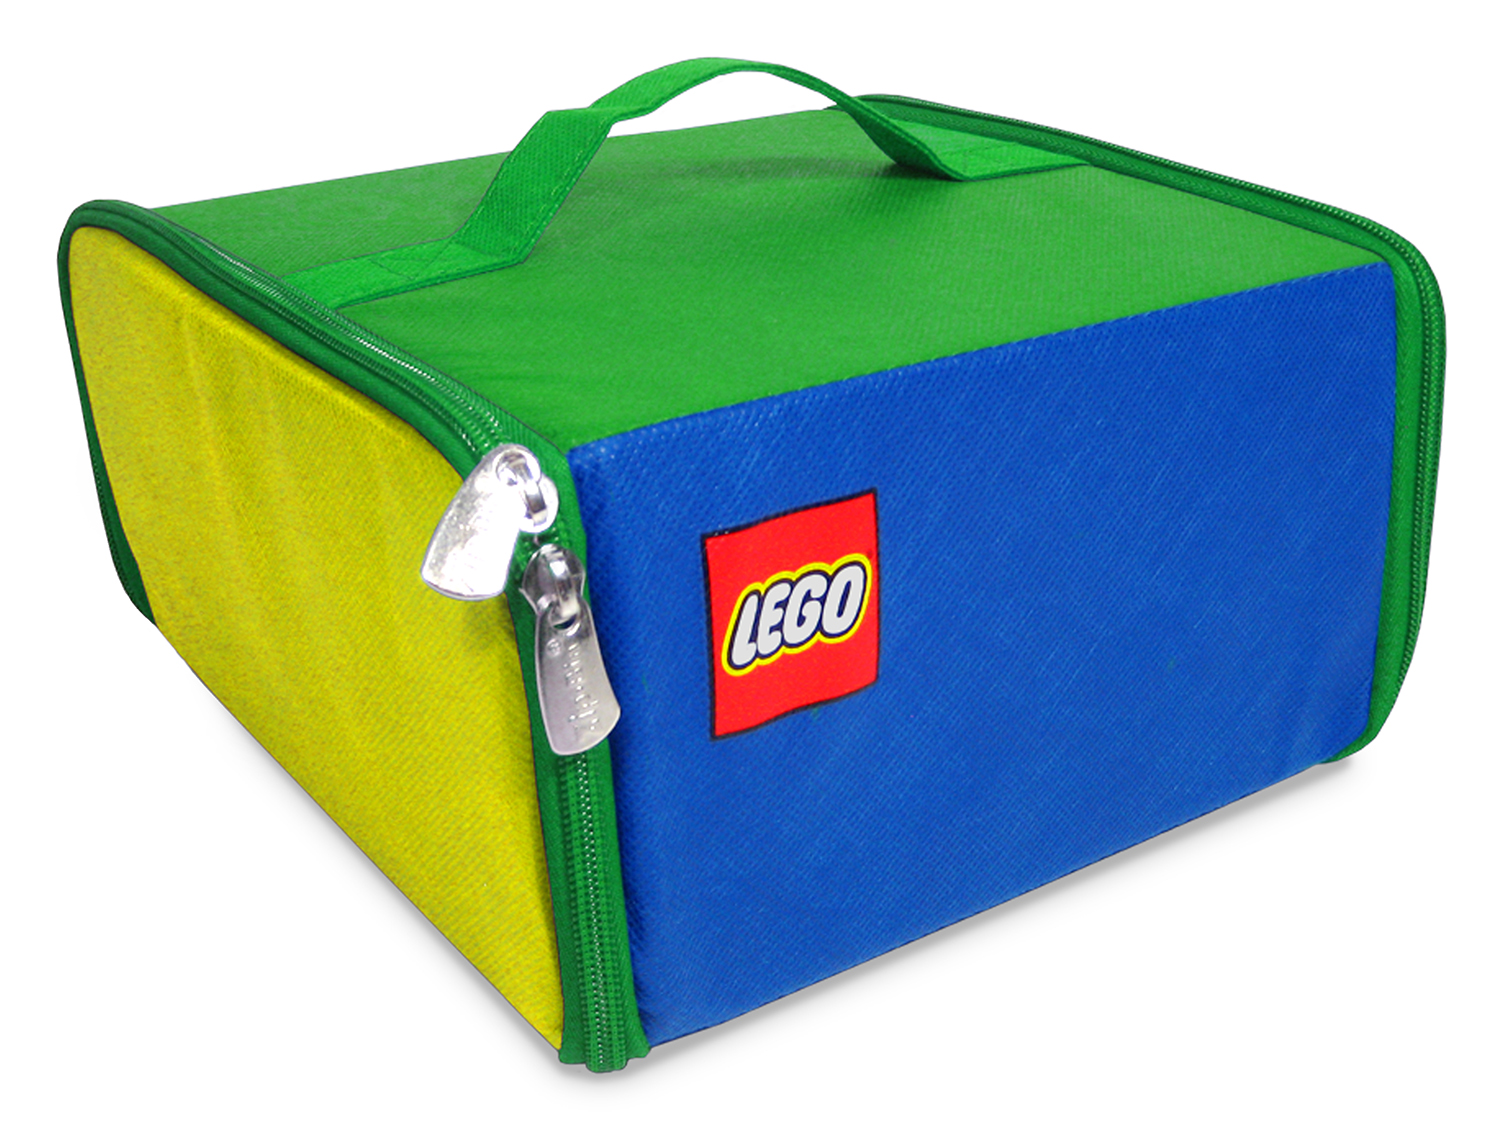 LEGO Rangements A1806XX pas cher, Boîte de rangement LEGO Zipbin 500 pièces